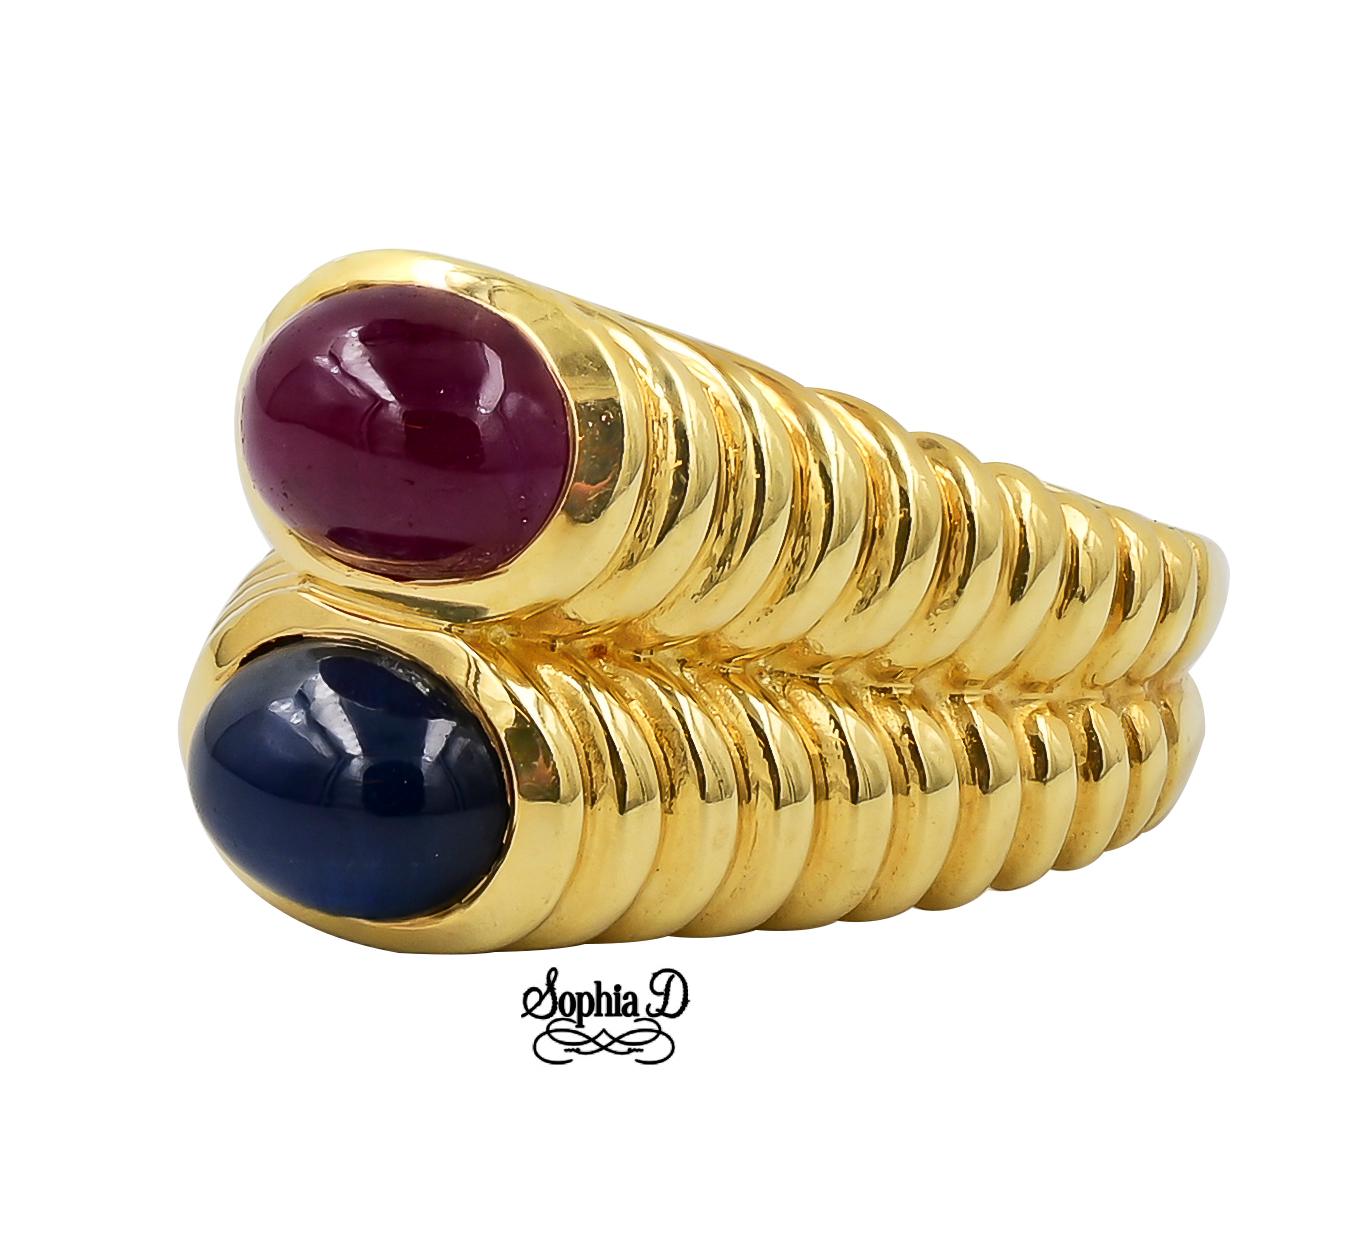 Ring aus 18 Karat Gelbgold mit blauem Saphir und Rubin.

Sophia D von Joseph Dardashti LTD ist seit 35 Jahren weltweit bekannt und lässt sich vom klassischen Art-Déco-Design inspirieren, das mit modernen Fertigungstechniken verschmilzt.  